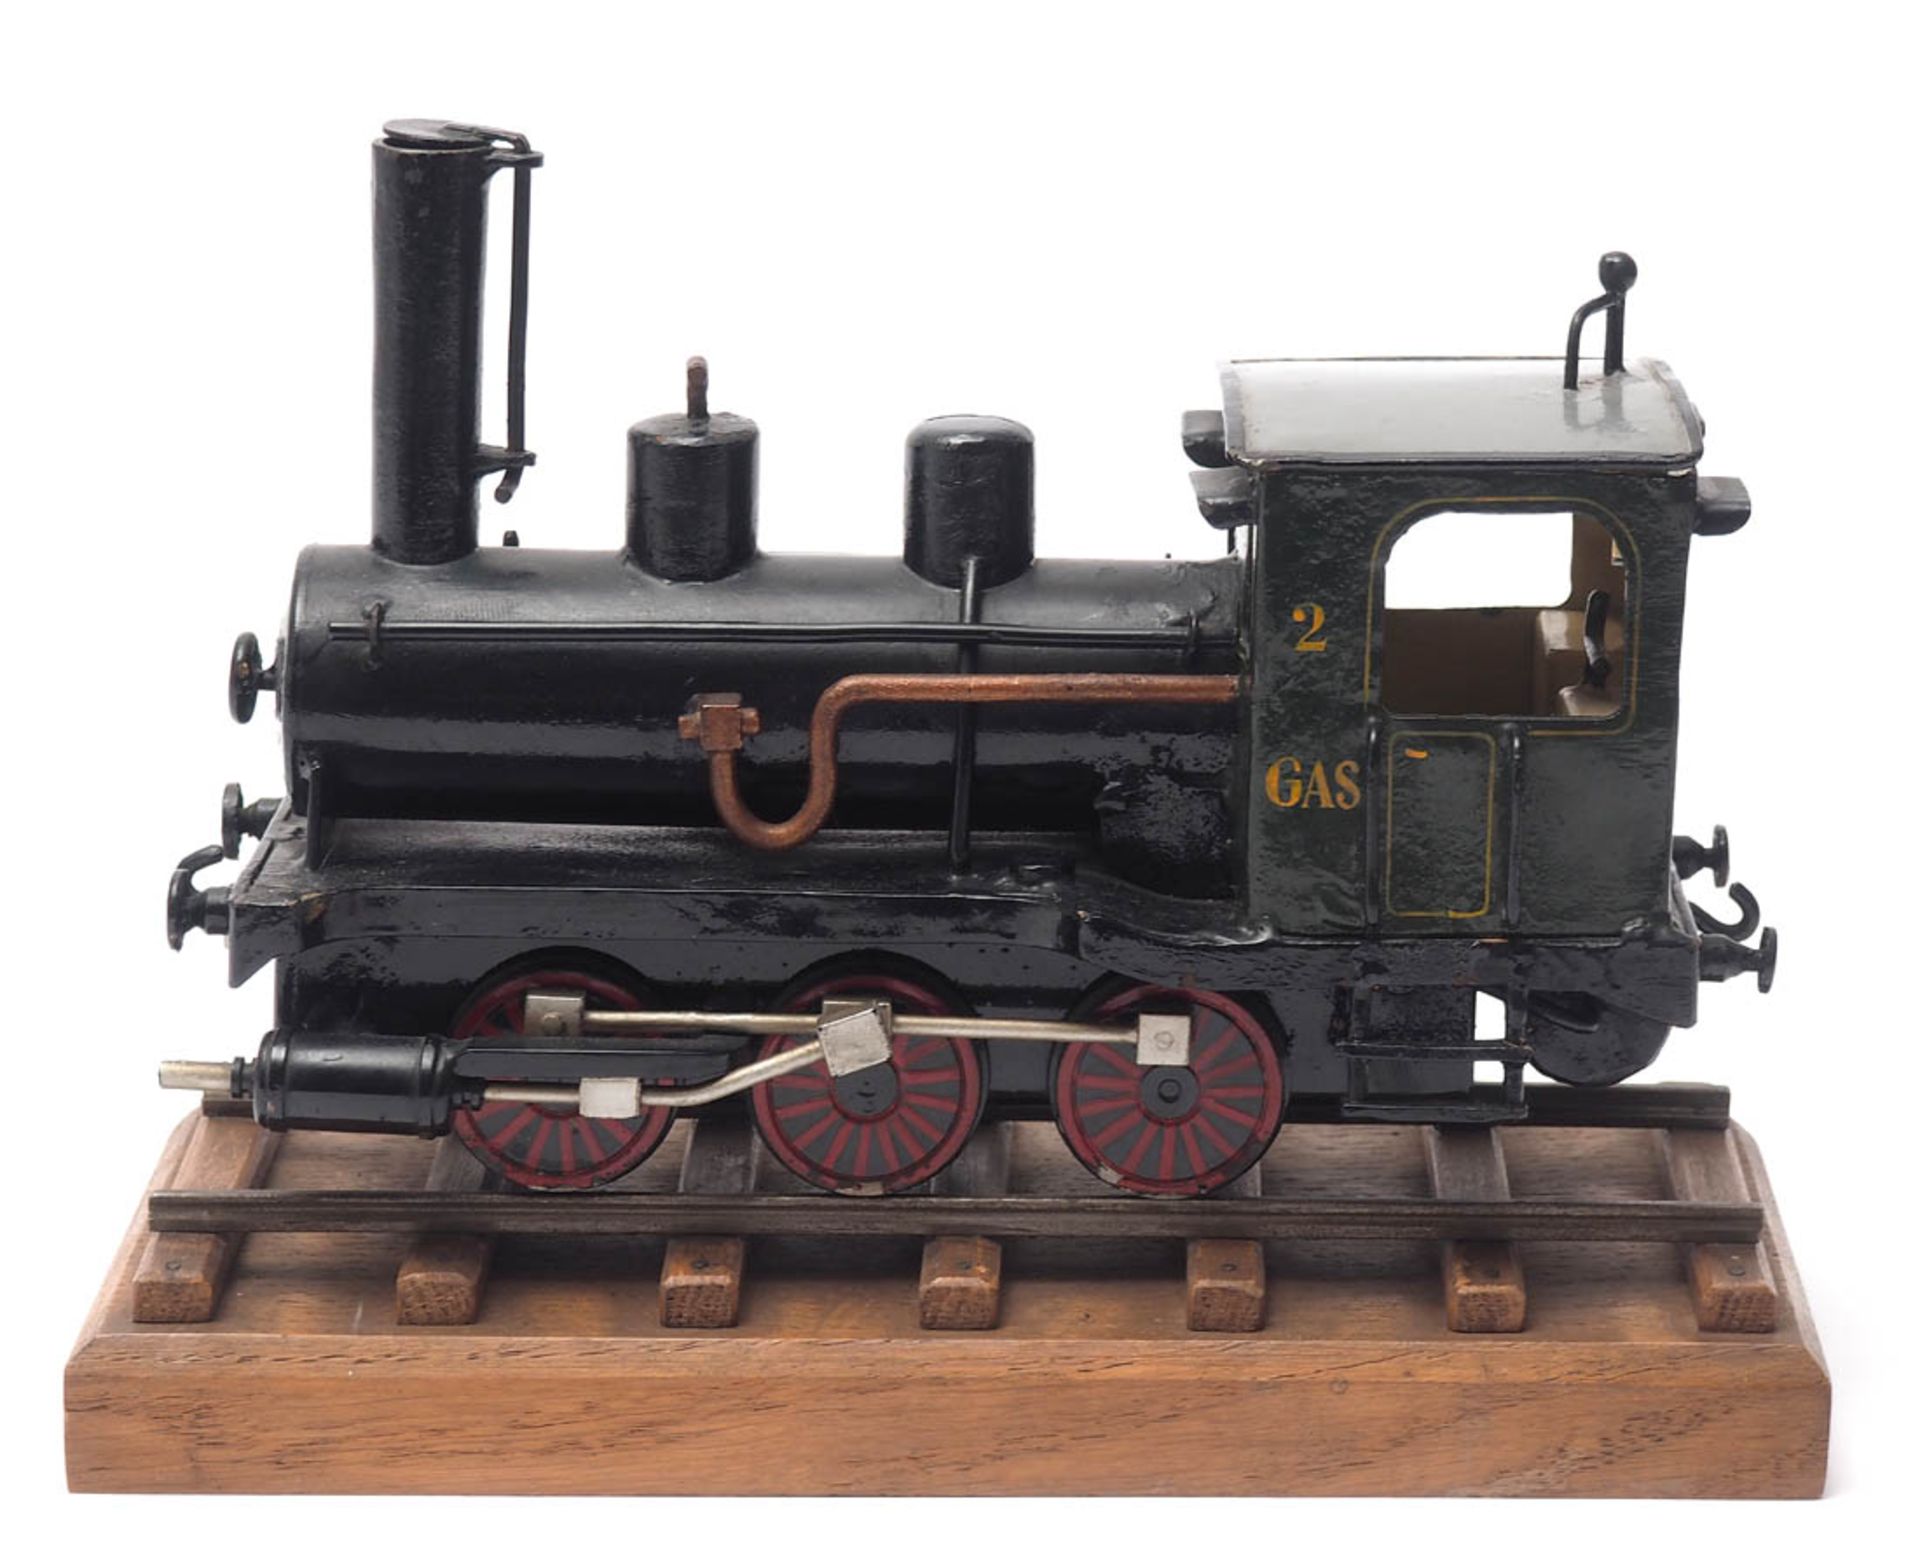 Modell einer Dampflokomotive Metall, farbig lackiert, auf Schienenstück stehend. L.25cm. - Bild 2 aus 3